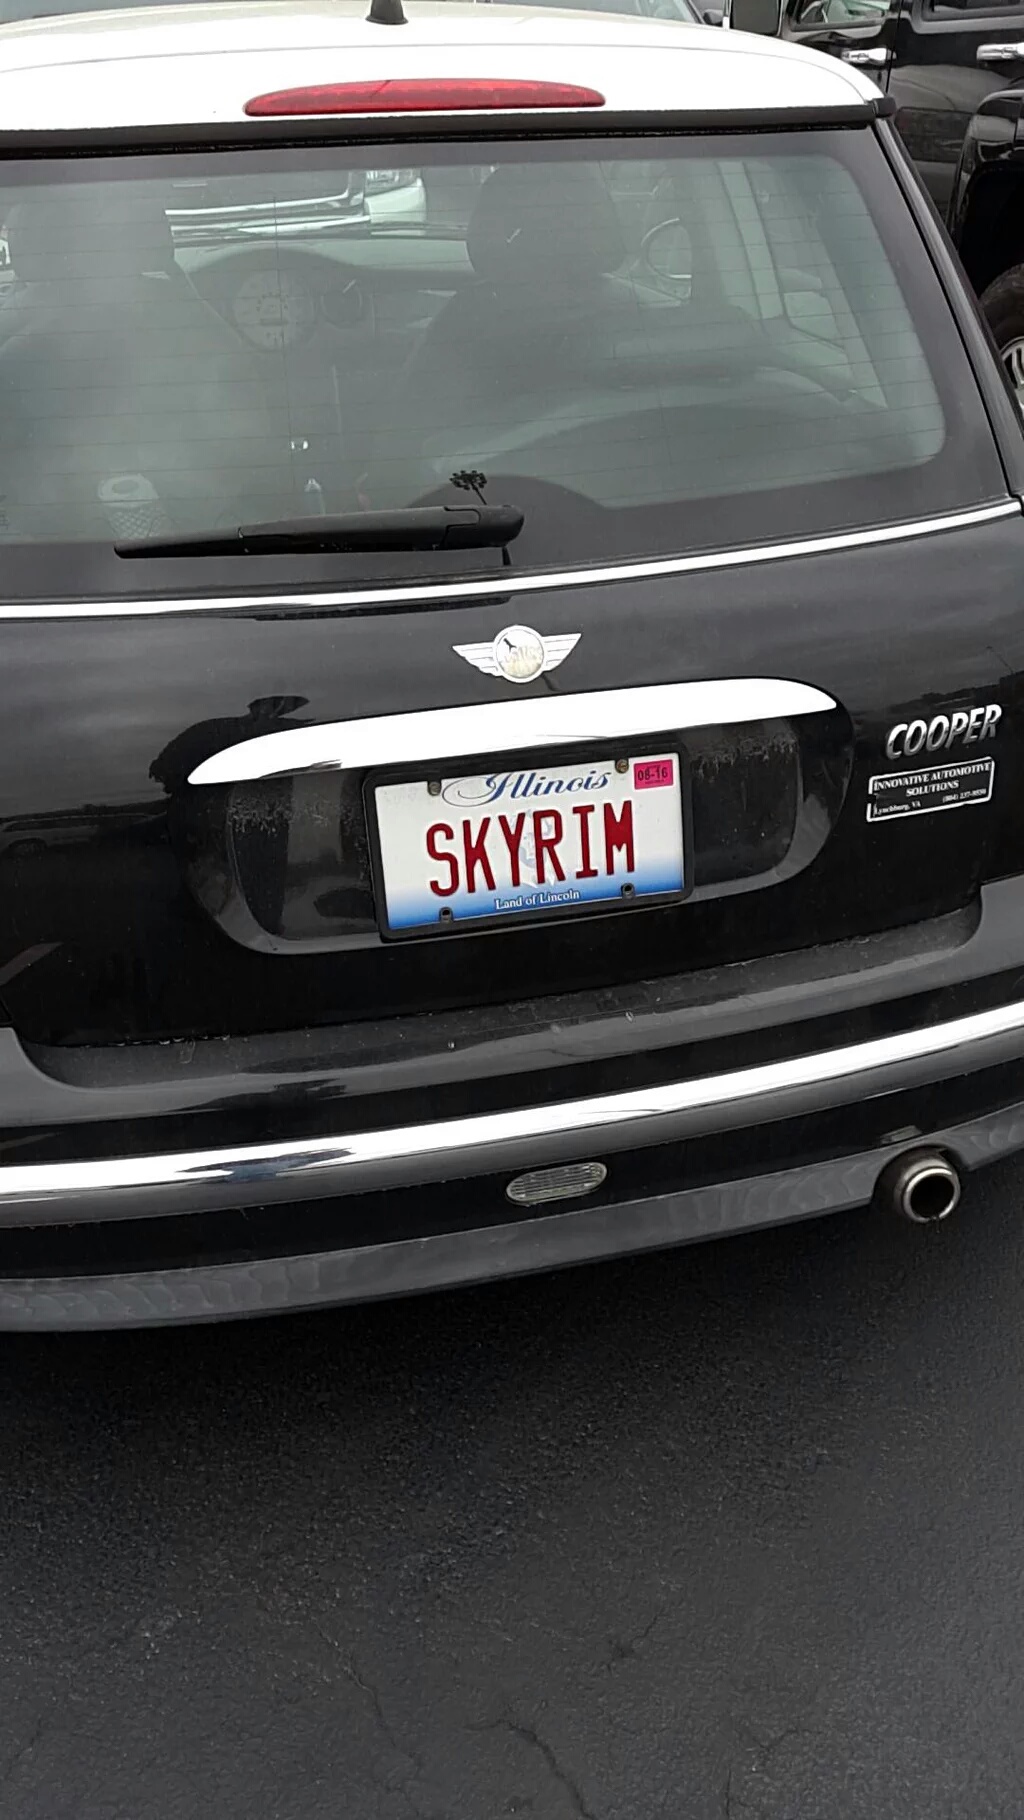 vehicle registration plate - Coop Skyrim